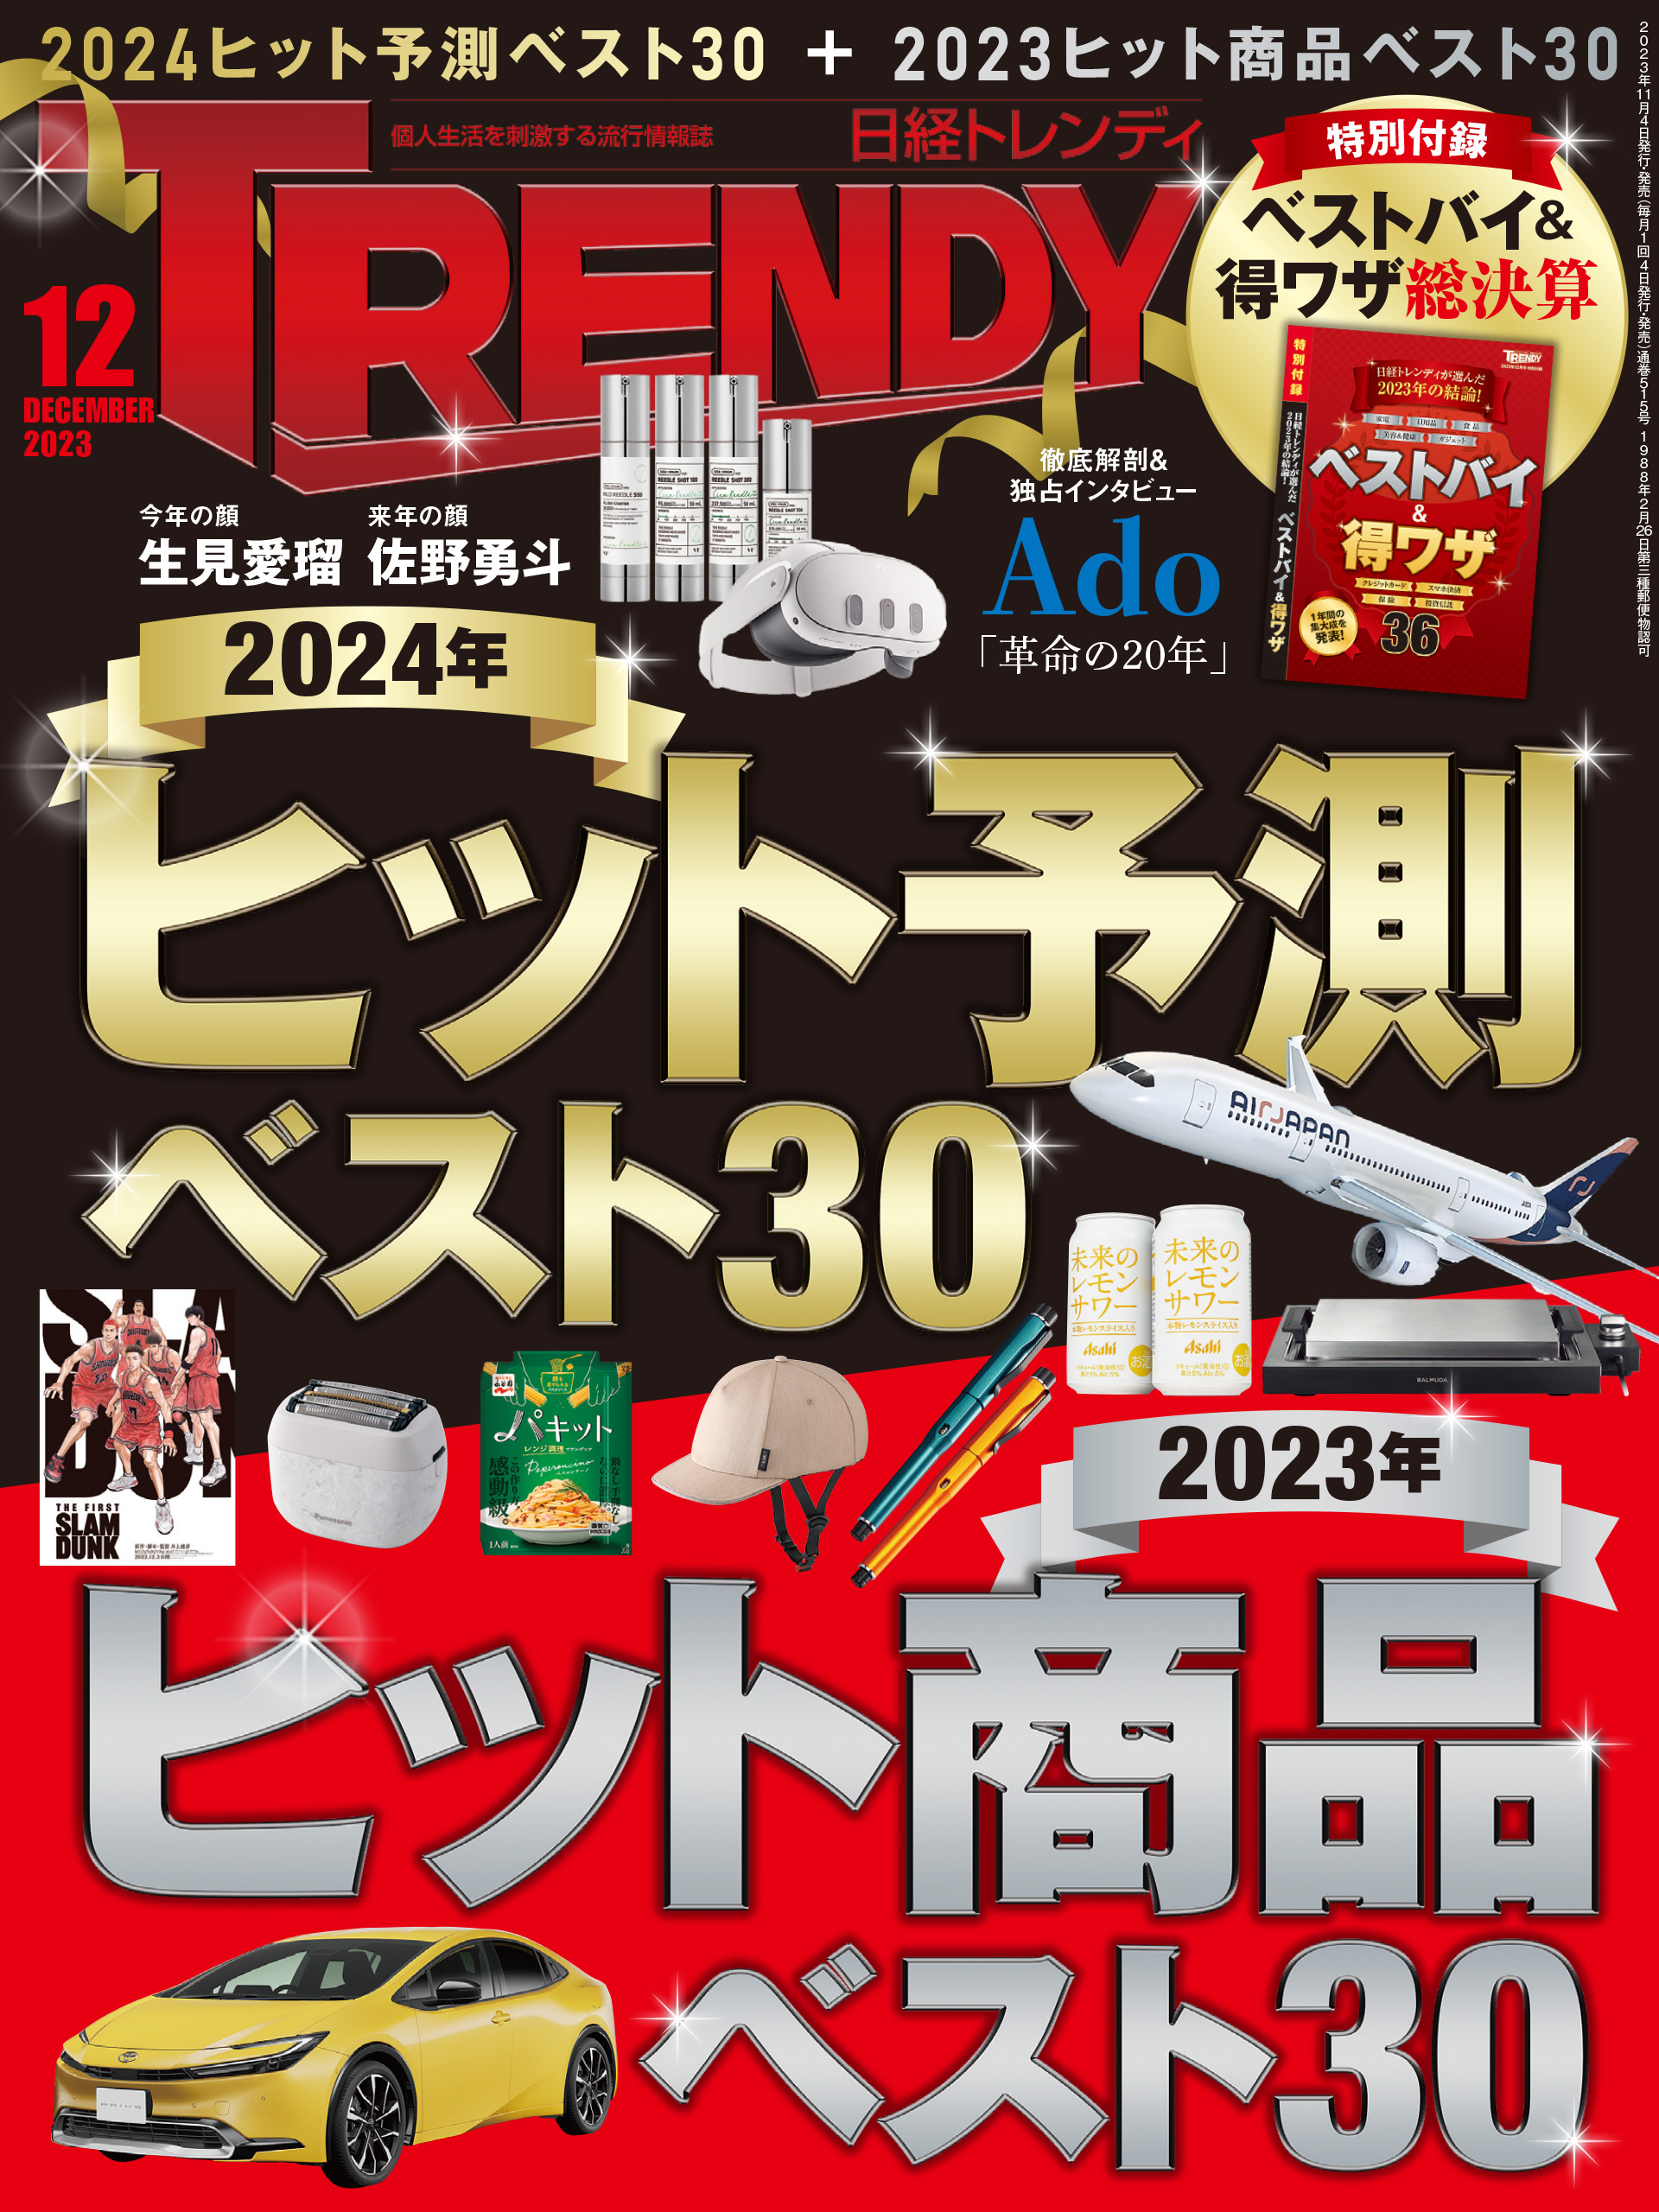 日経サイエンス 2023年4月~2024年1月号  10冊セット